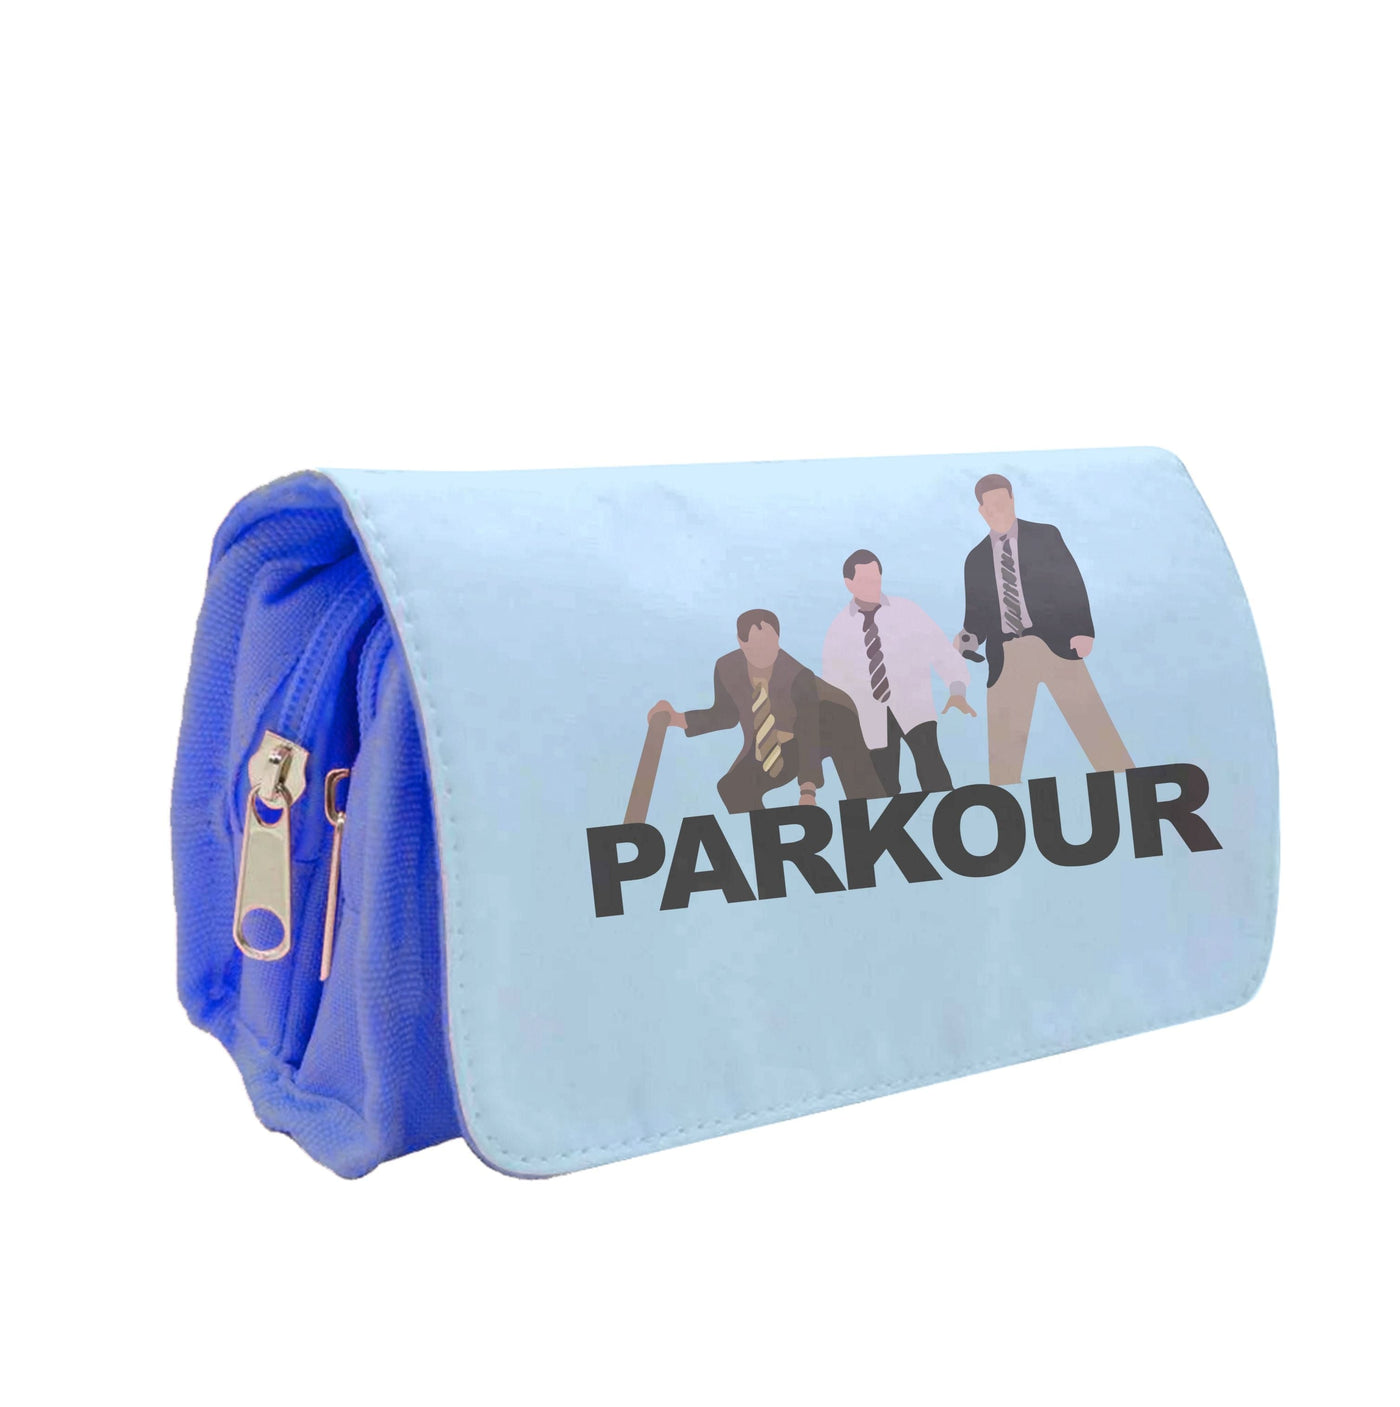 Parkour - The Office Pencil Case